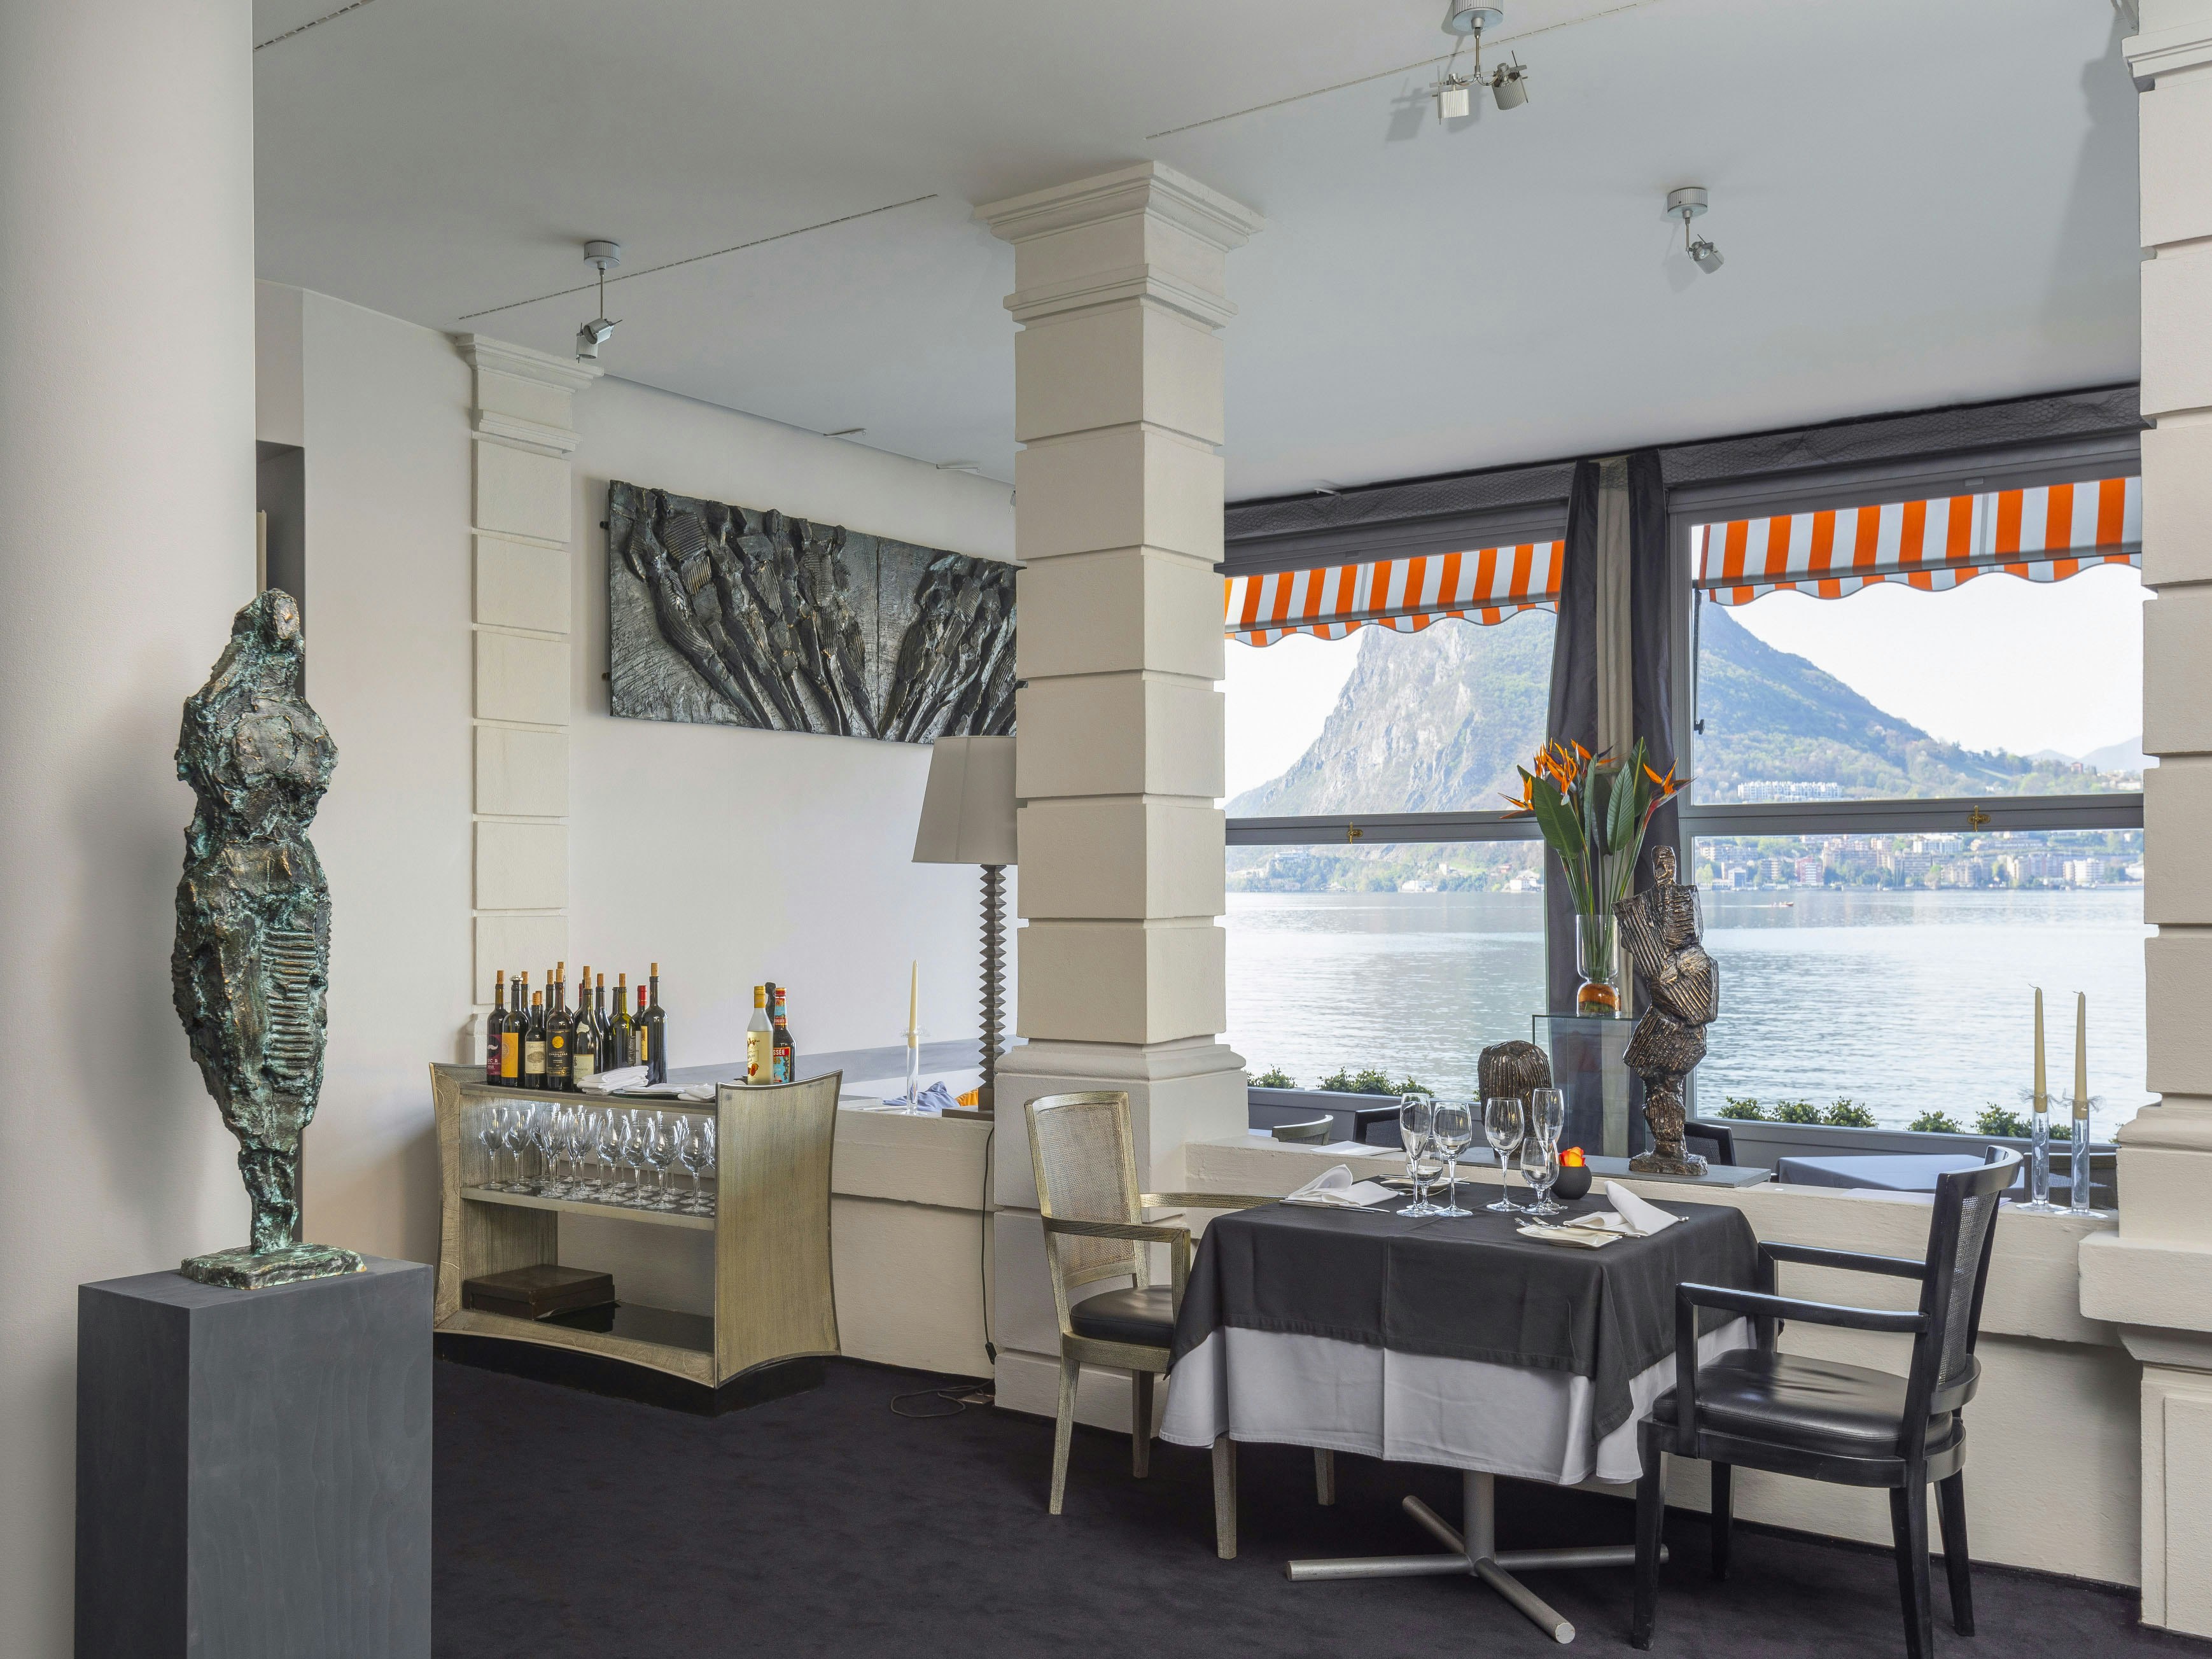 Degustationsmen&uuml; im <br>
Restaurant Galerie Art&eacute; al Lago